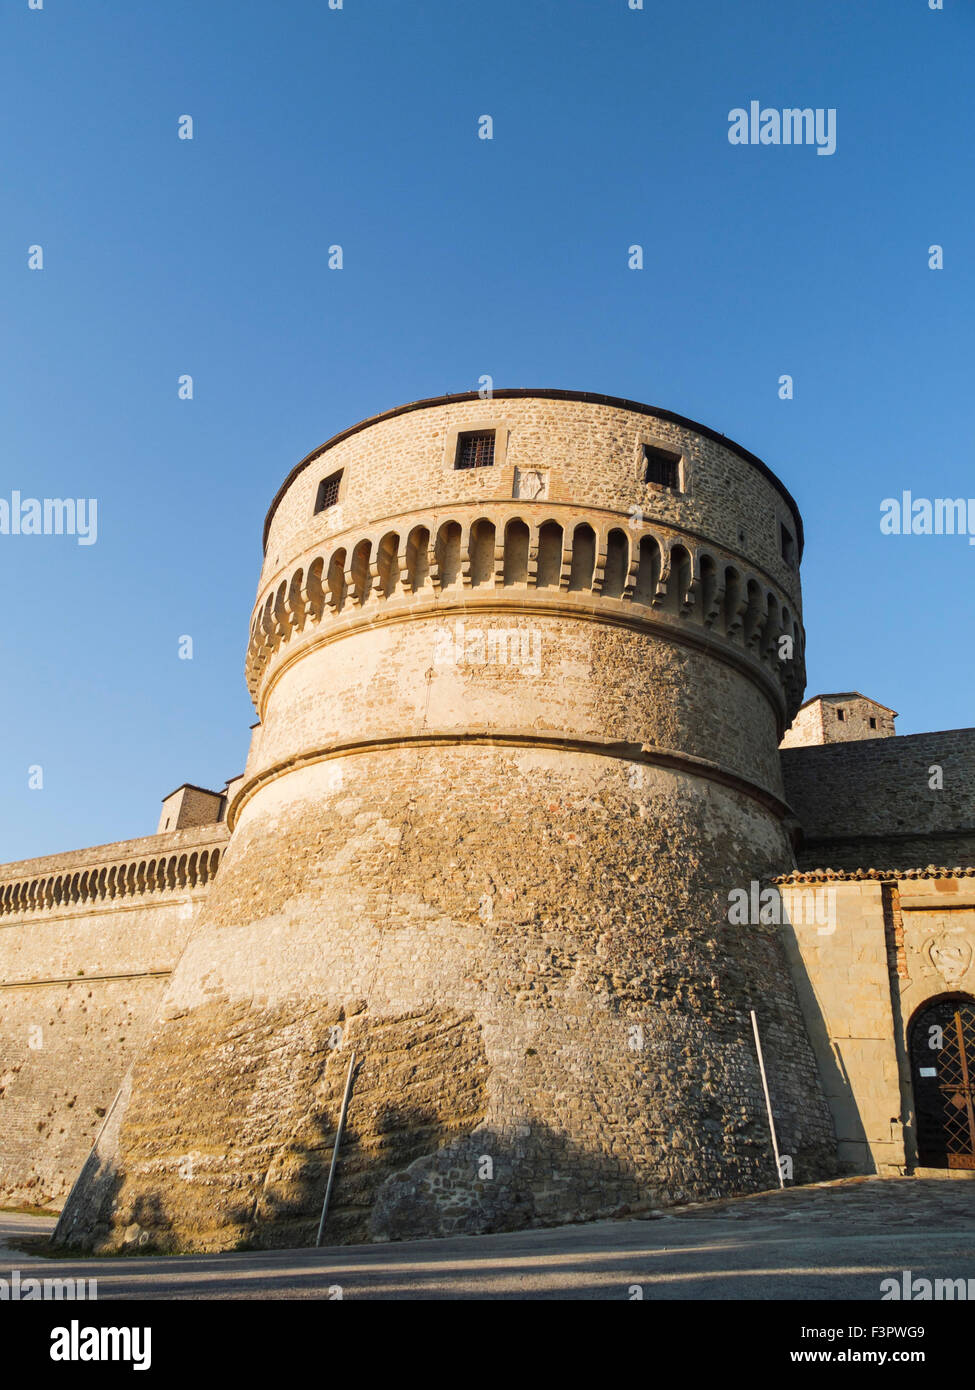 Italy, Emilia-Romagna, Urbino - the Fortezza on the Rocca, castle on the rock. Stock Photo